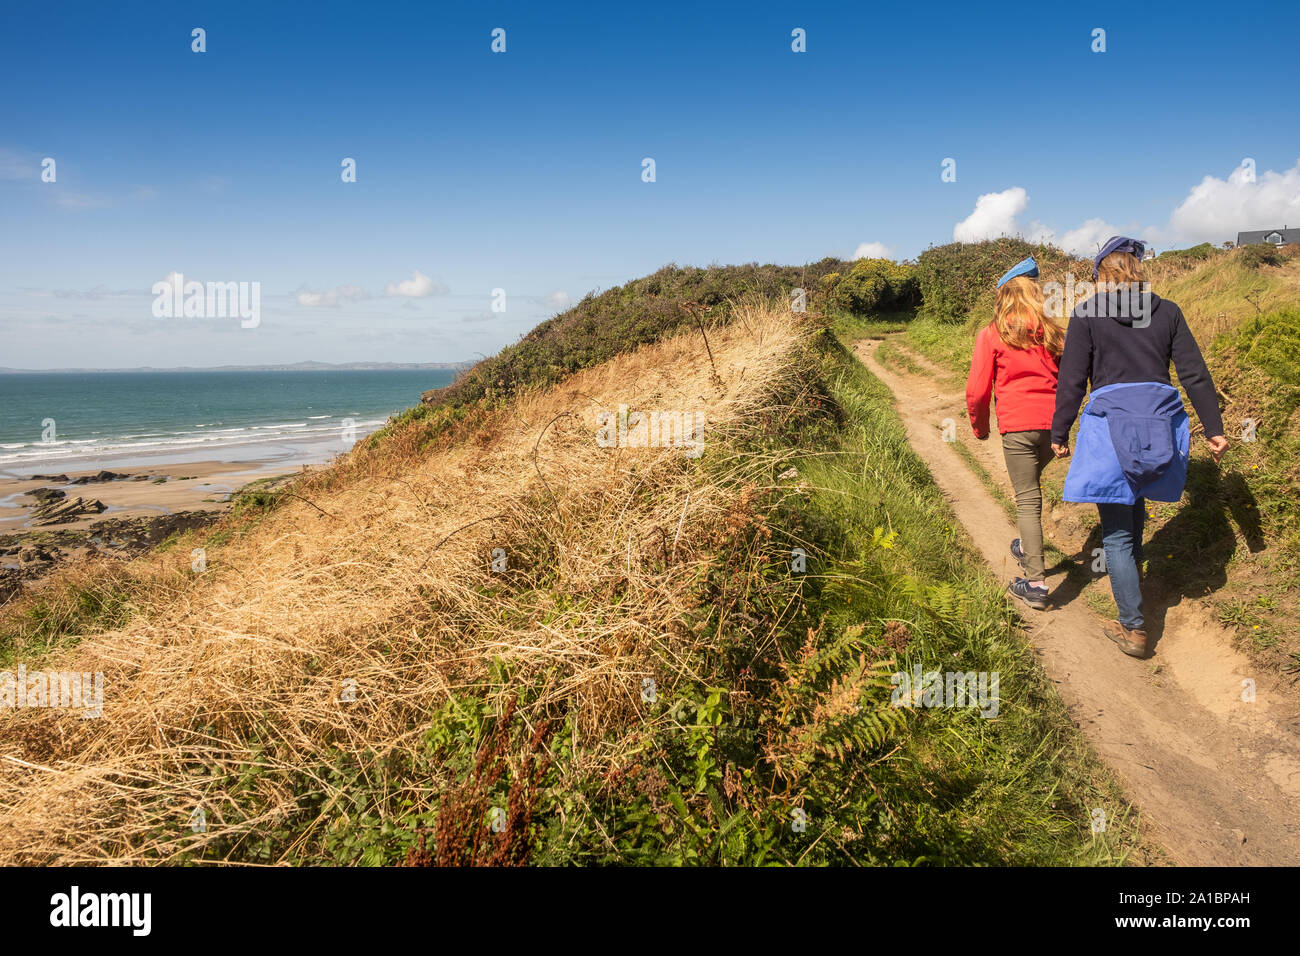 La gente caminando a lo largo de la ruta costera cerca de amplio refugio en la costa de St Bride's Bay, el Parque Nacional de Pembrokeshire, al sur de Gales Occidental UK Foto de stock